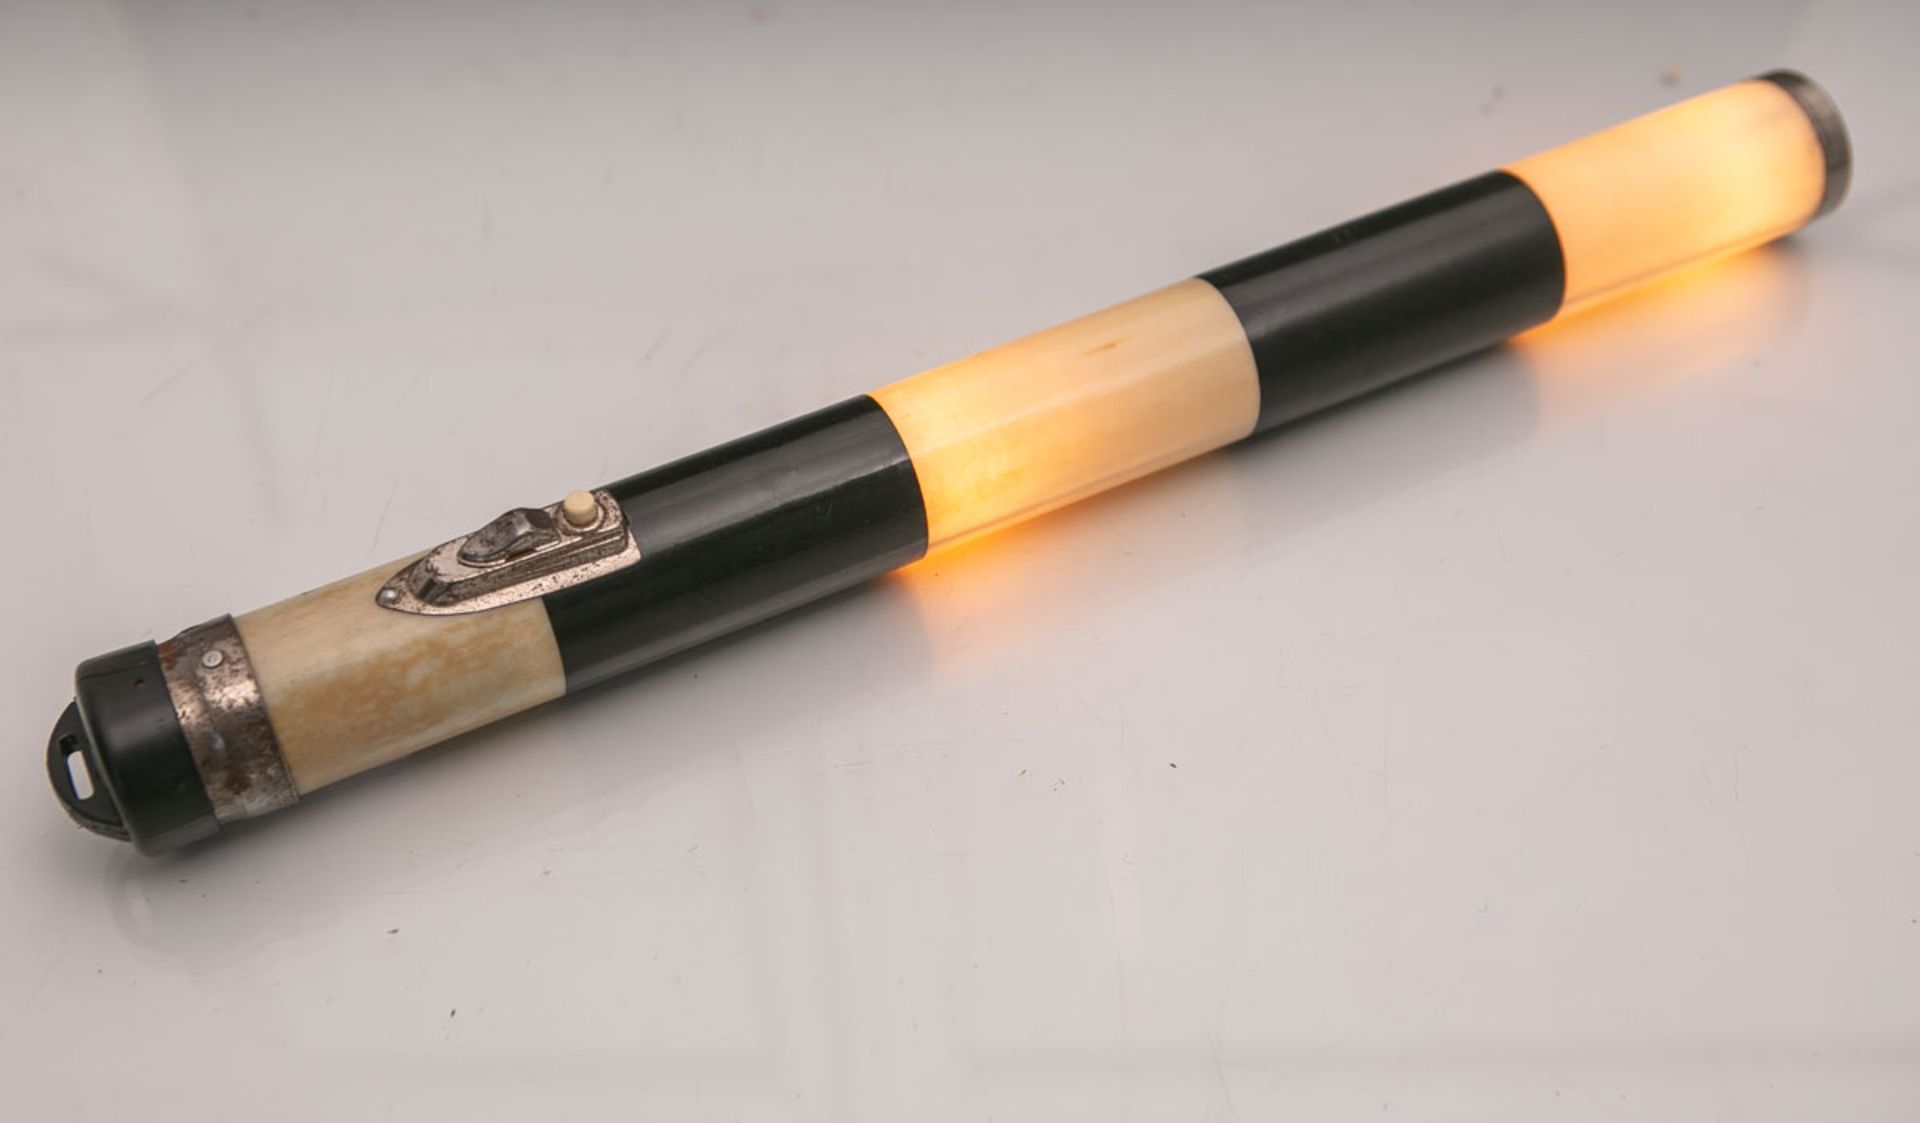 Stabtaschenlampe von "Artas", L. ca. 42 cm. Rostspuren, Plastikdeckel am Griff beschädigt.